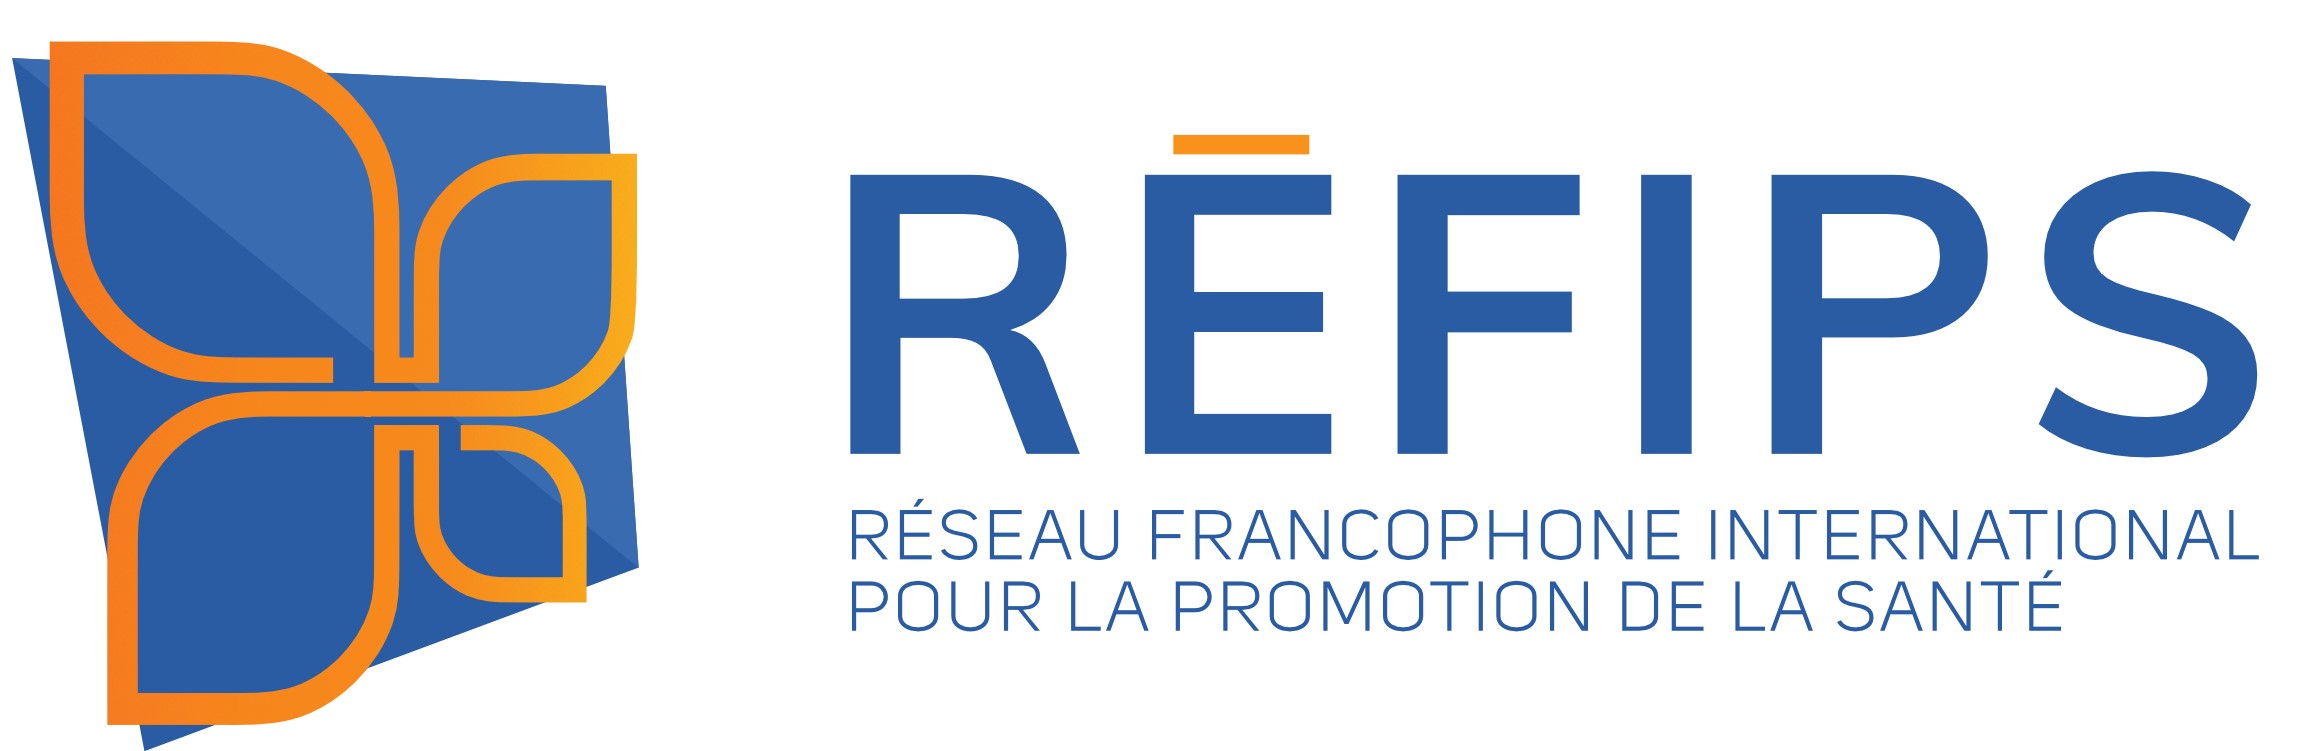 Réseau francophone international pour la promotion de la sante (RÉFIPS) – section des Ameriques - Logo